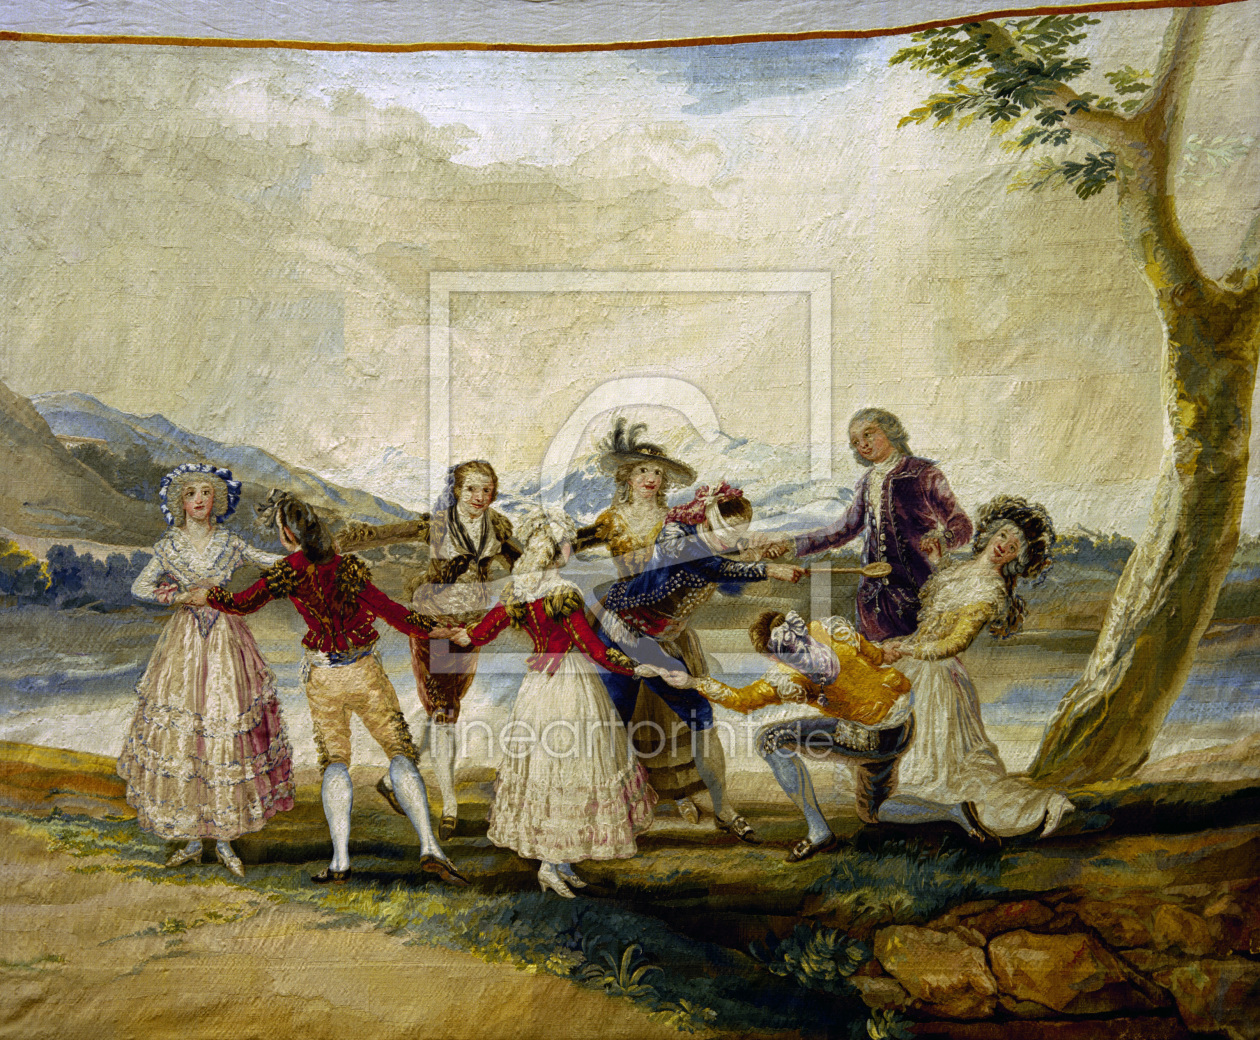 F.de Goya, Blind Man's Buff Tapestry als Fensterfoli. 